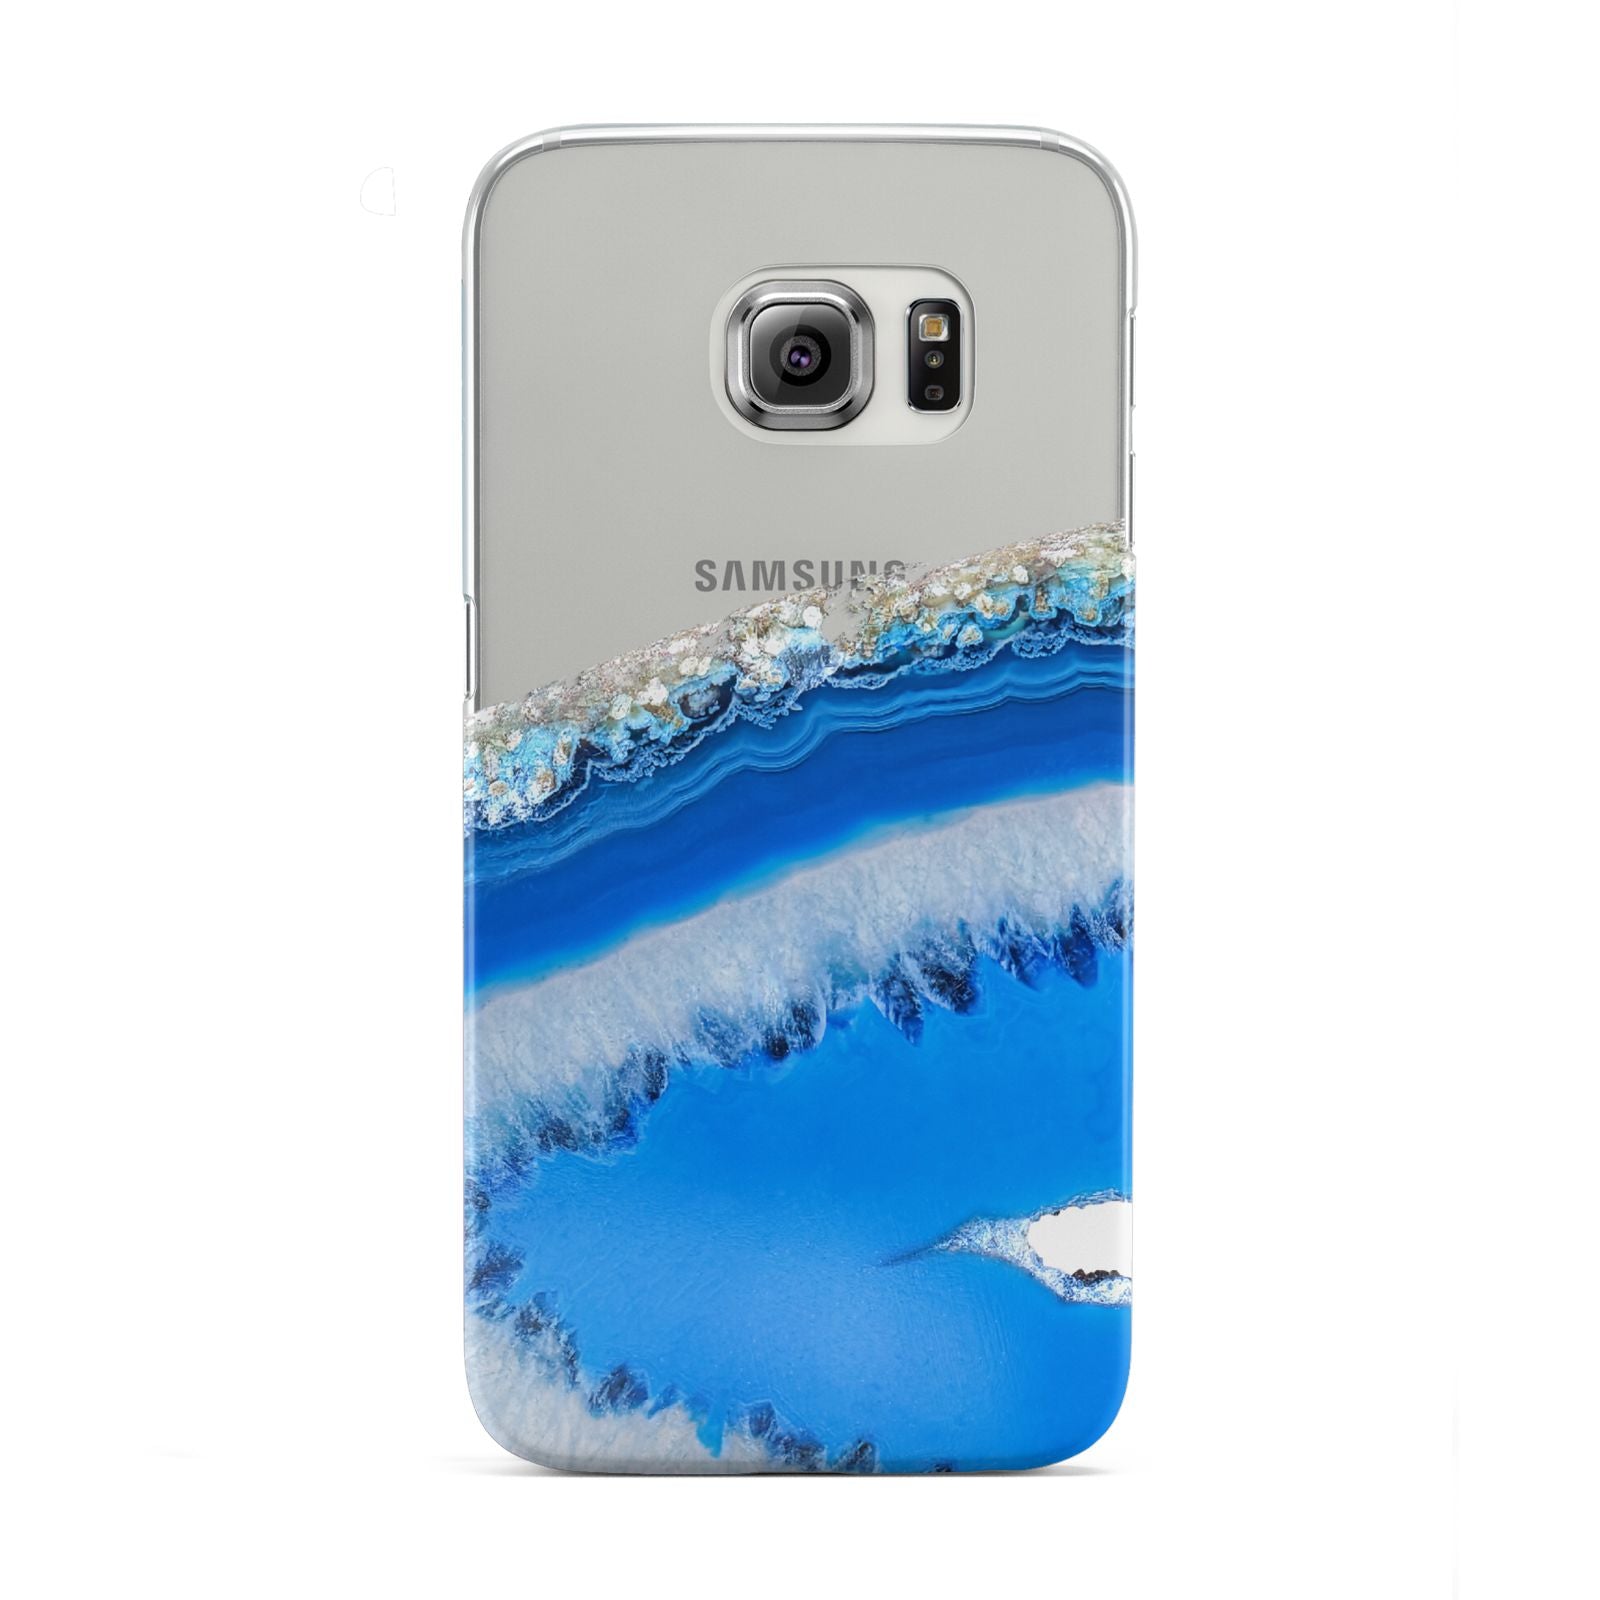 Agate Blue Samsung Galaxy S6 Edge Case